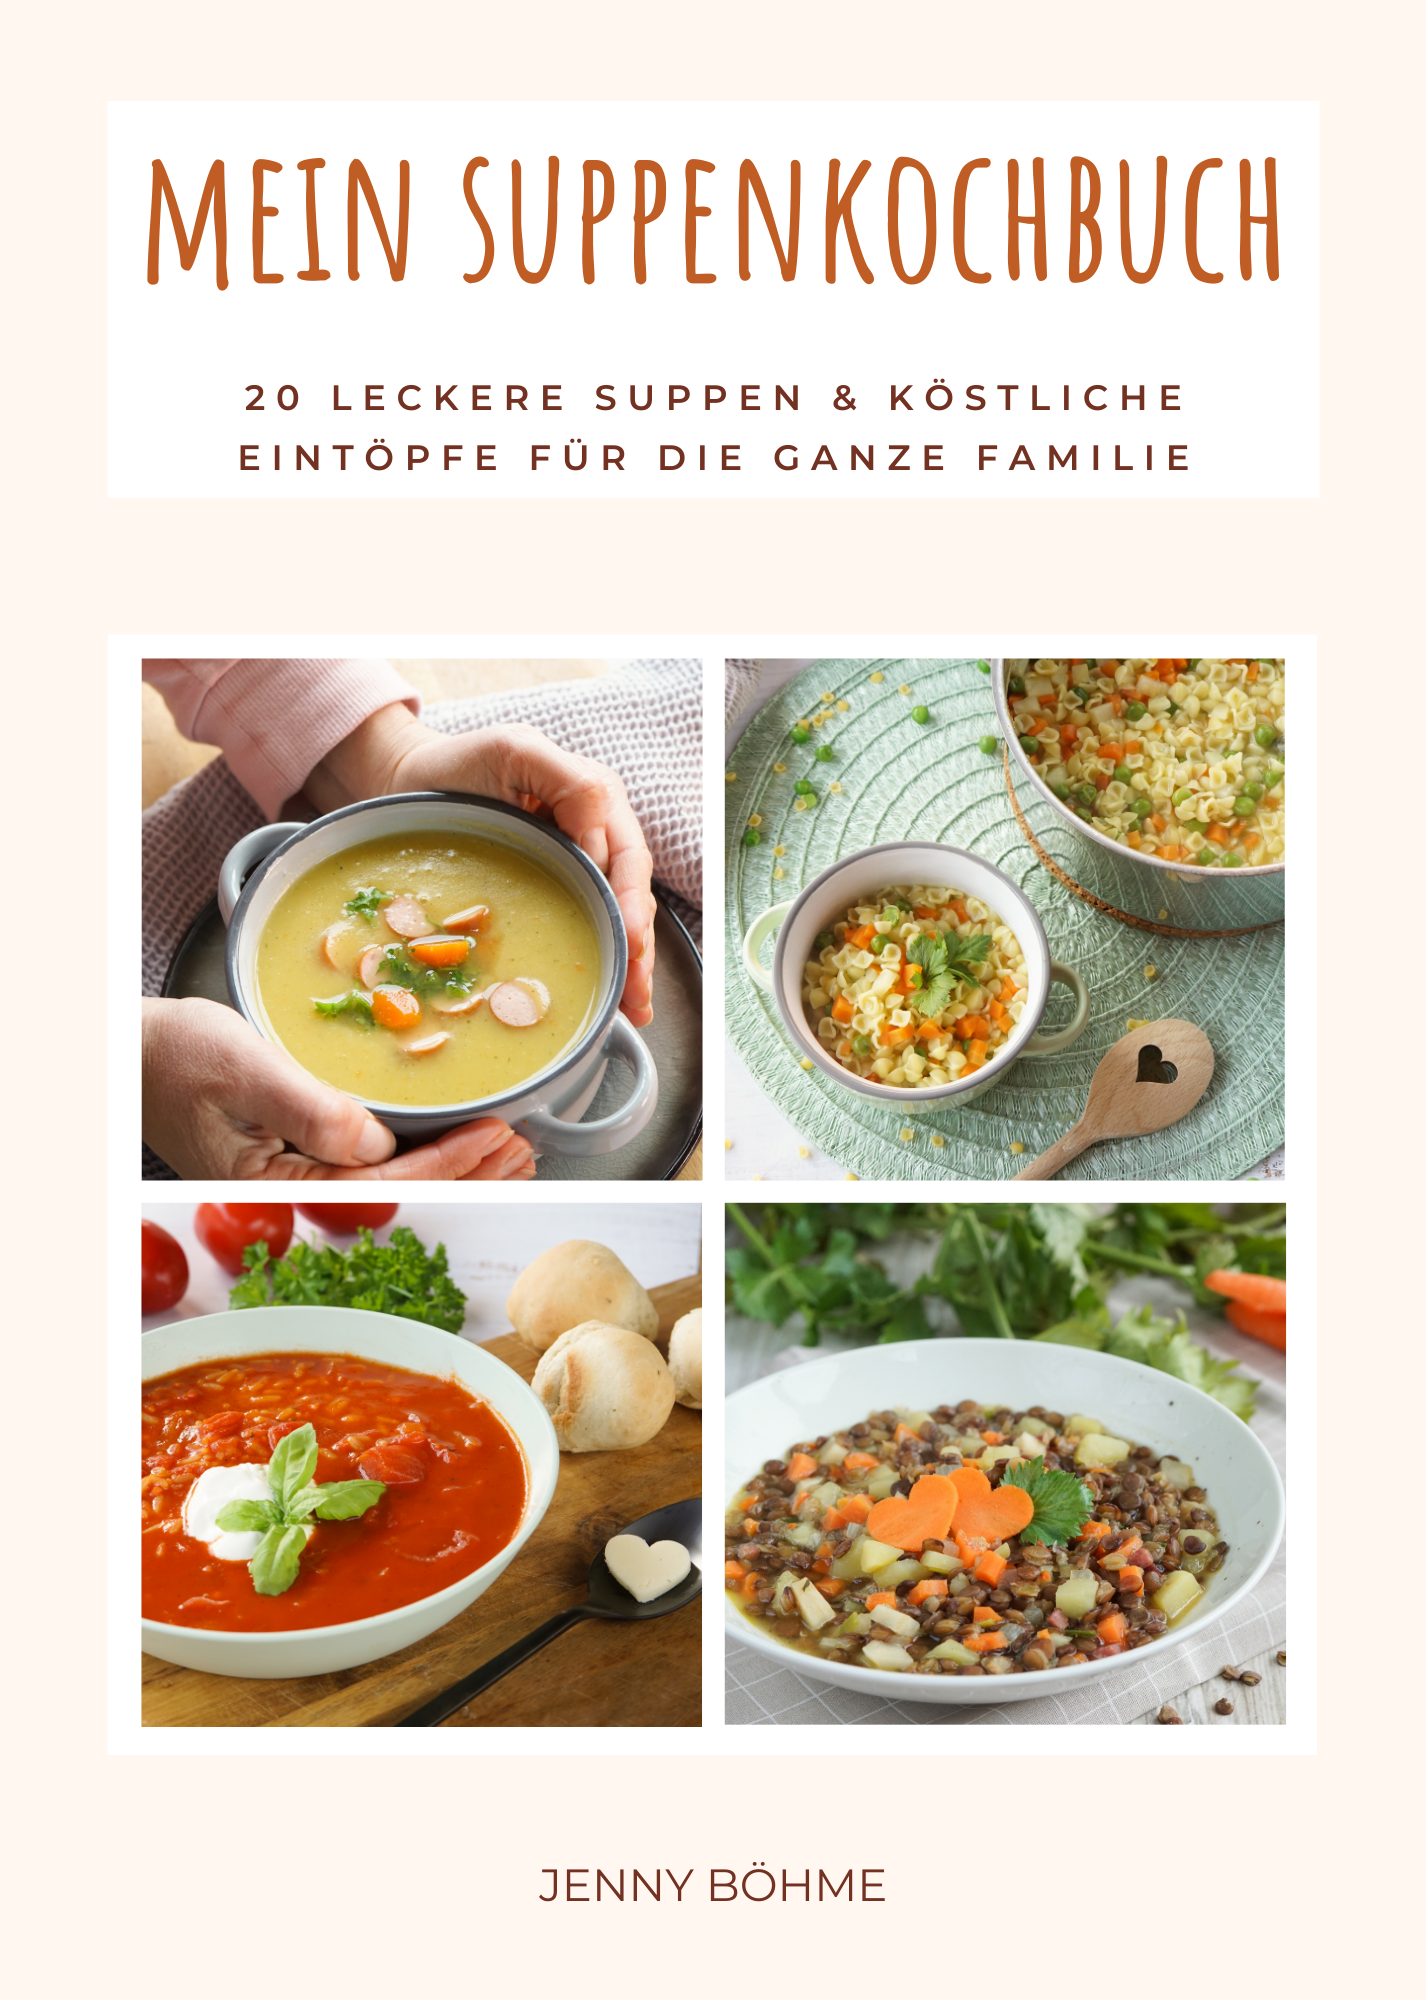 Familienkost: Mein Suppenkochbuch by Jenny Böhme